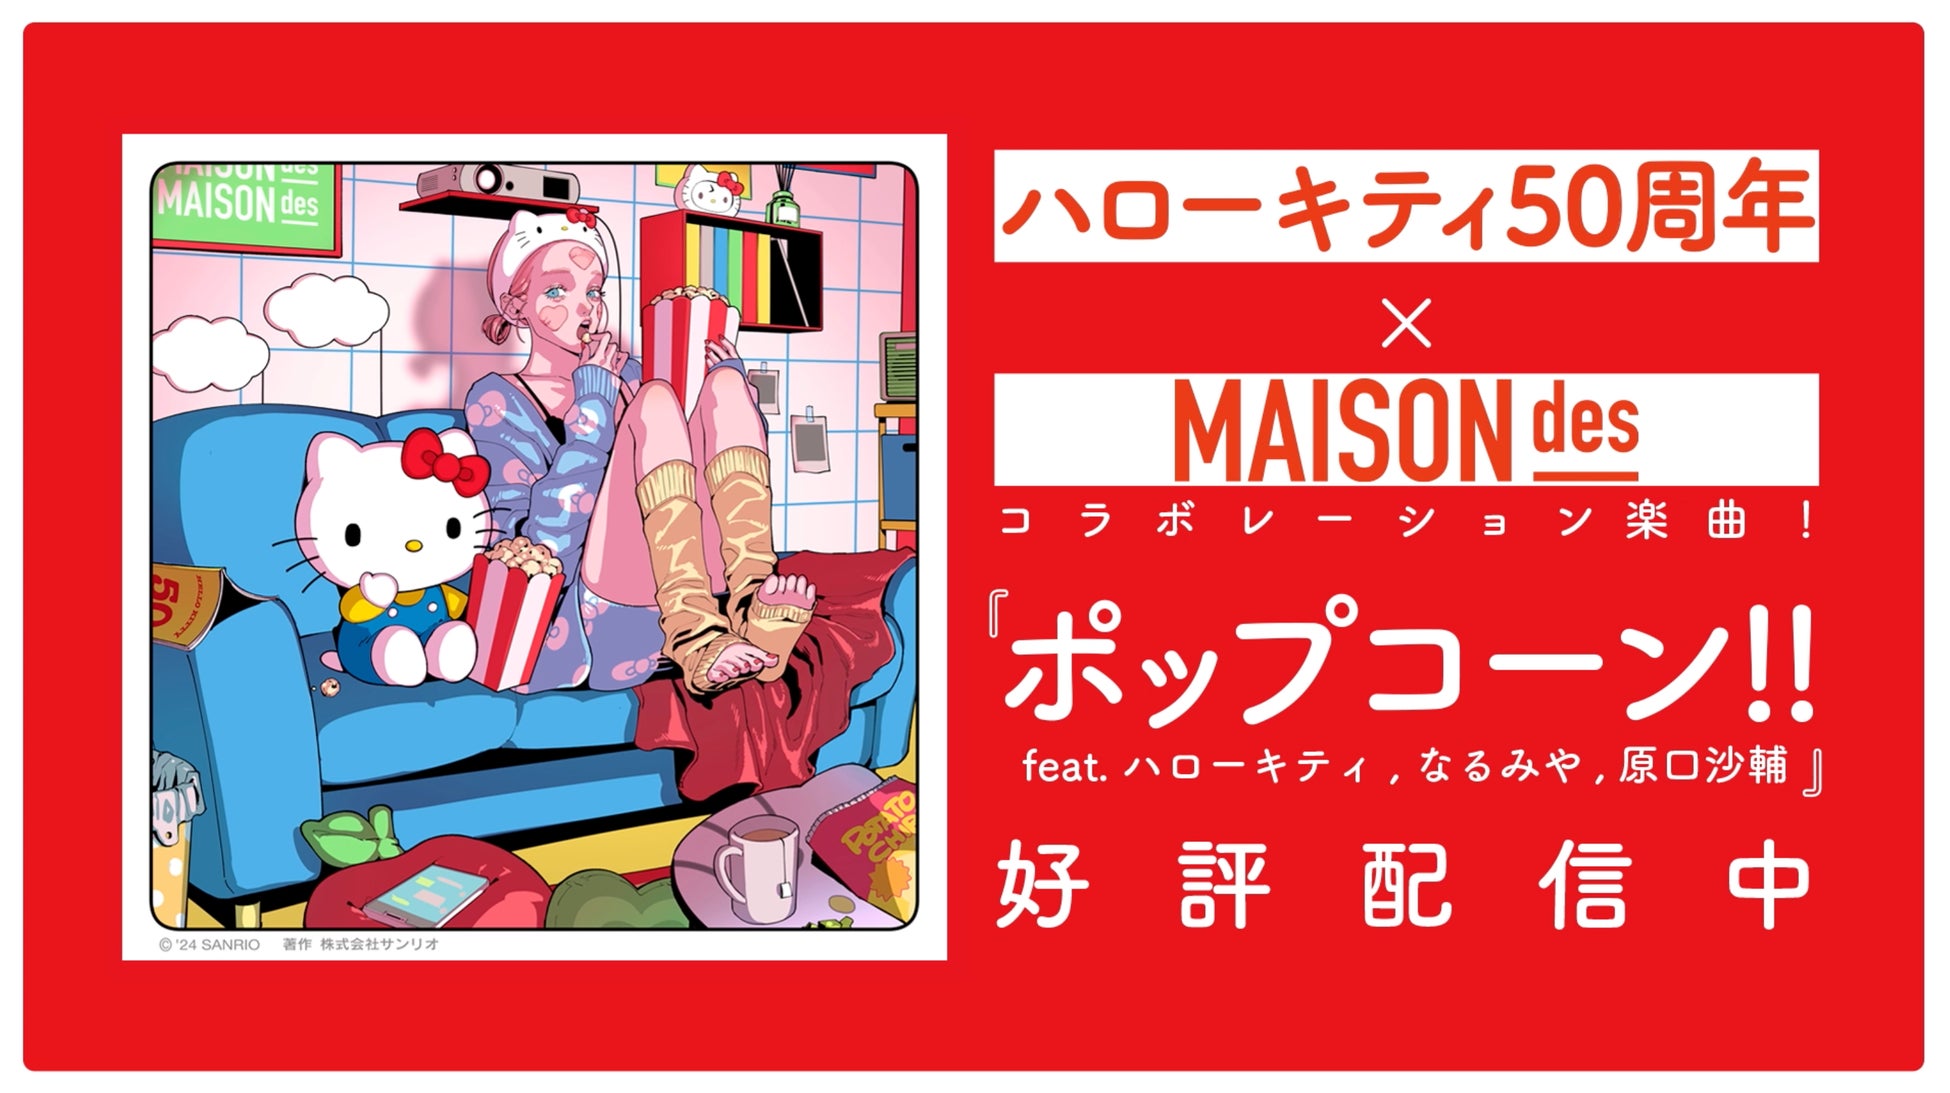 MAISONdesとハローキティのコラボレーション楽曲『ポップコーン!! feat. ハローキティ, なるみや, 原口沙輔』...